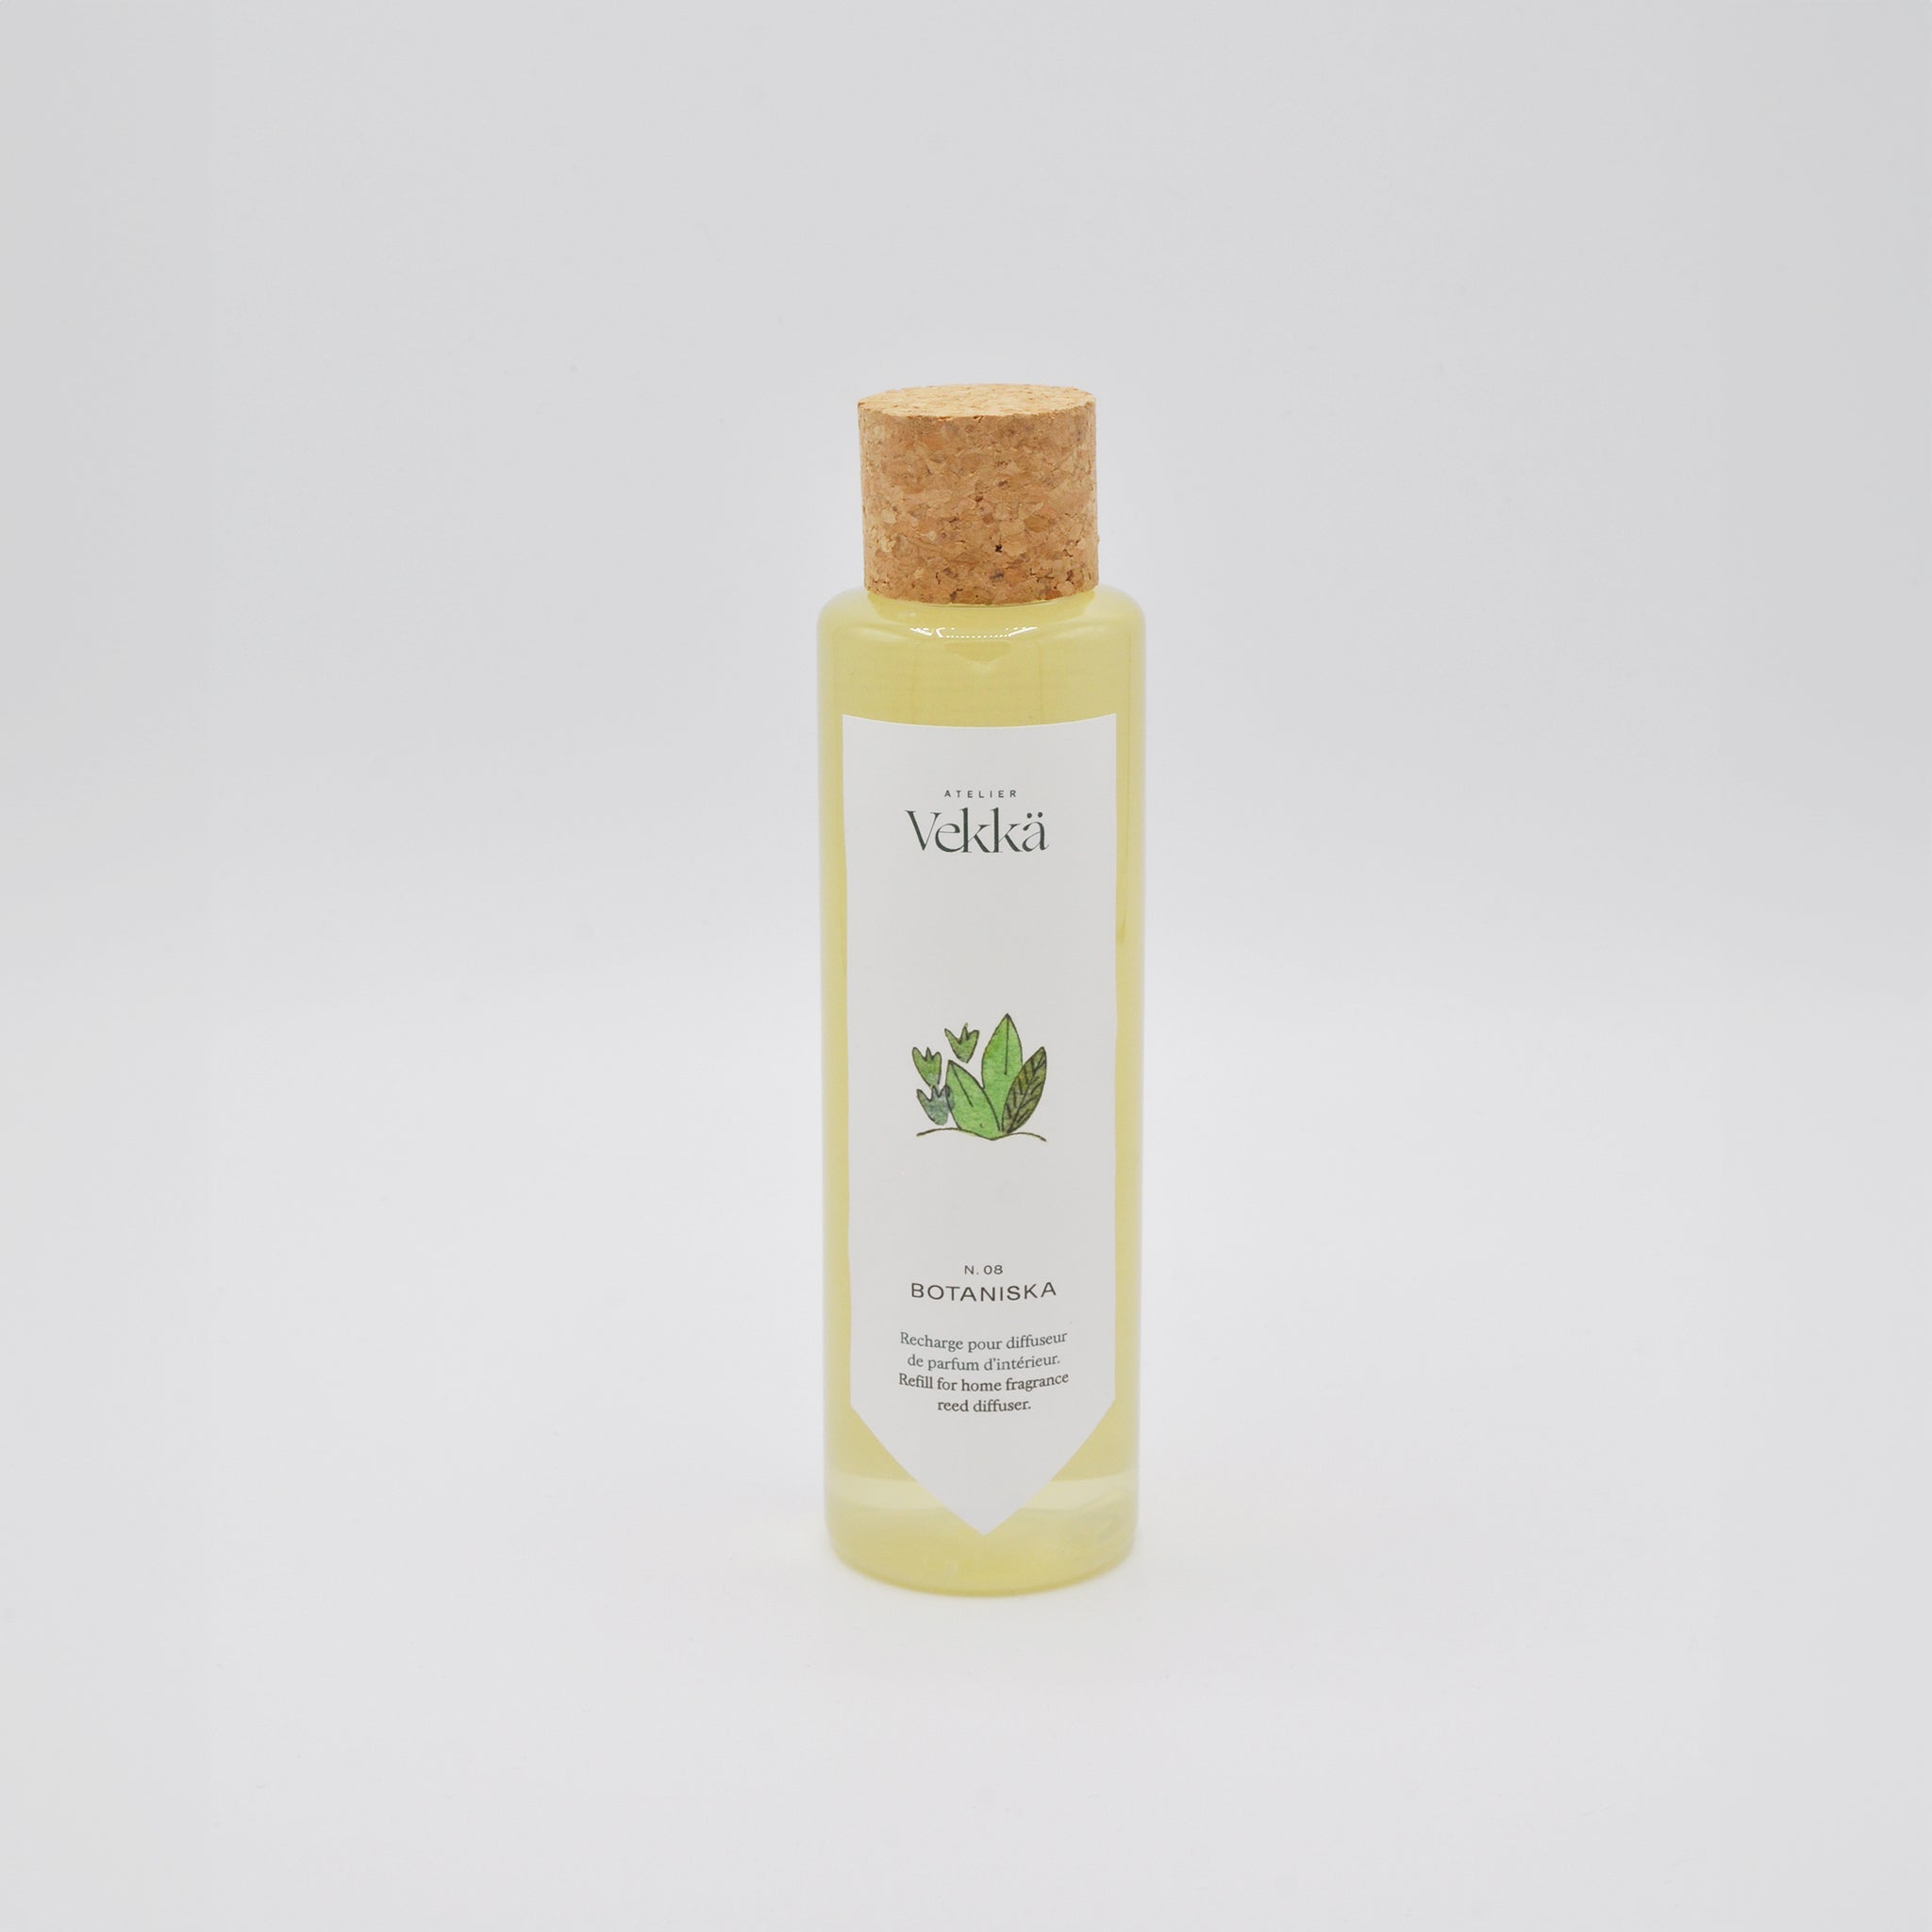 Fragrance refill for diffuser N.08 - Botaniska